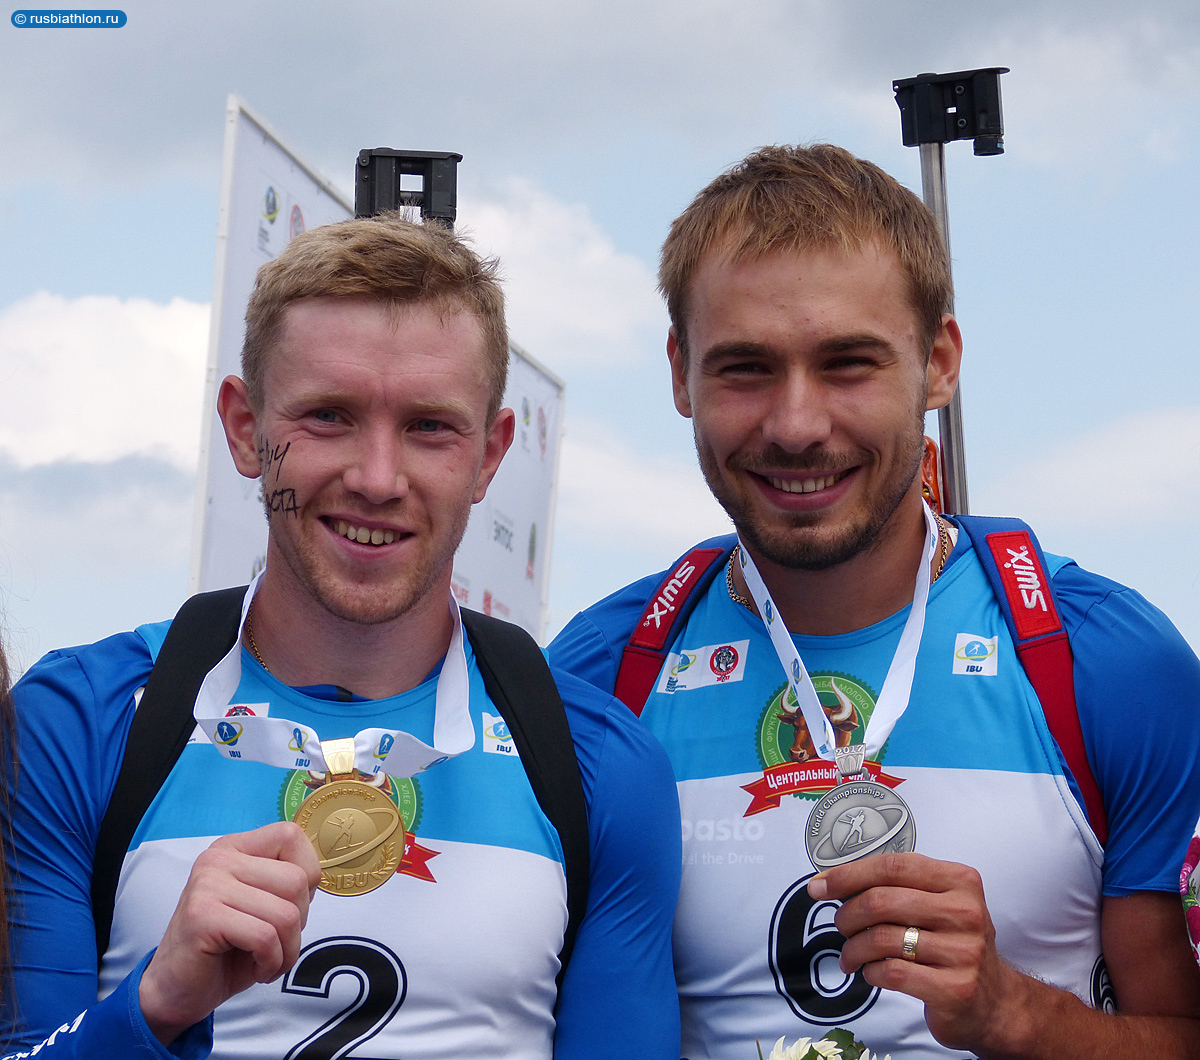 Олимпийские чемпионы Алексей Волков и Антон Шипулин